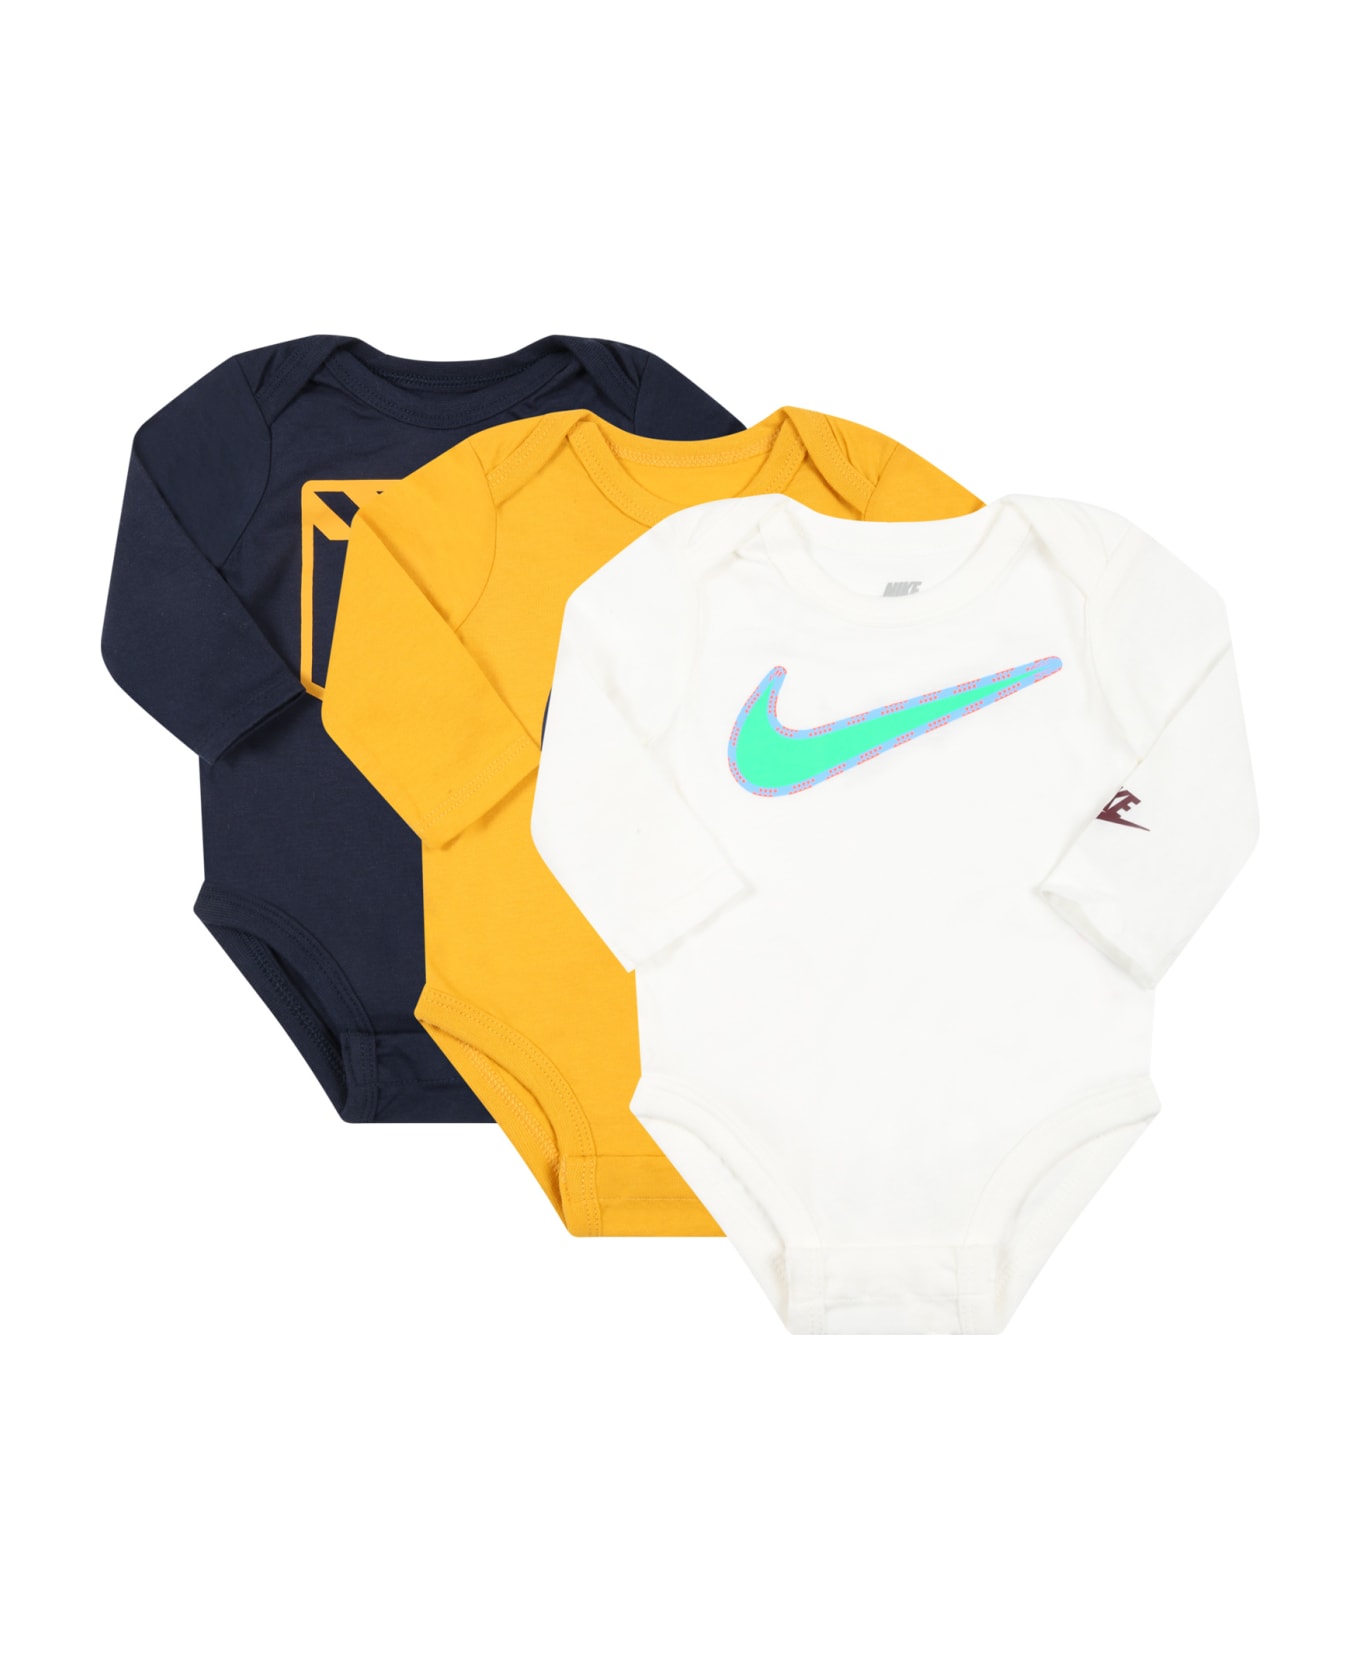 Nike Multicolor Set For Baby Boy - Multicolor